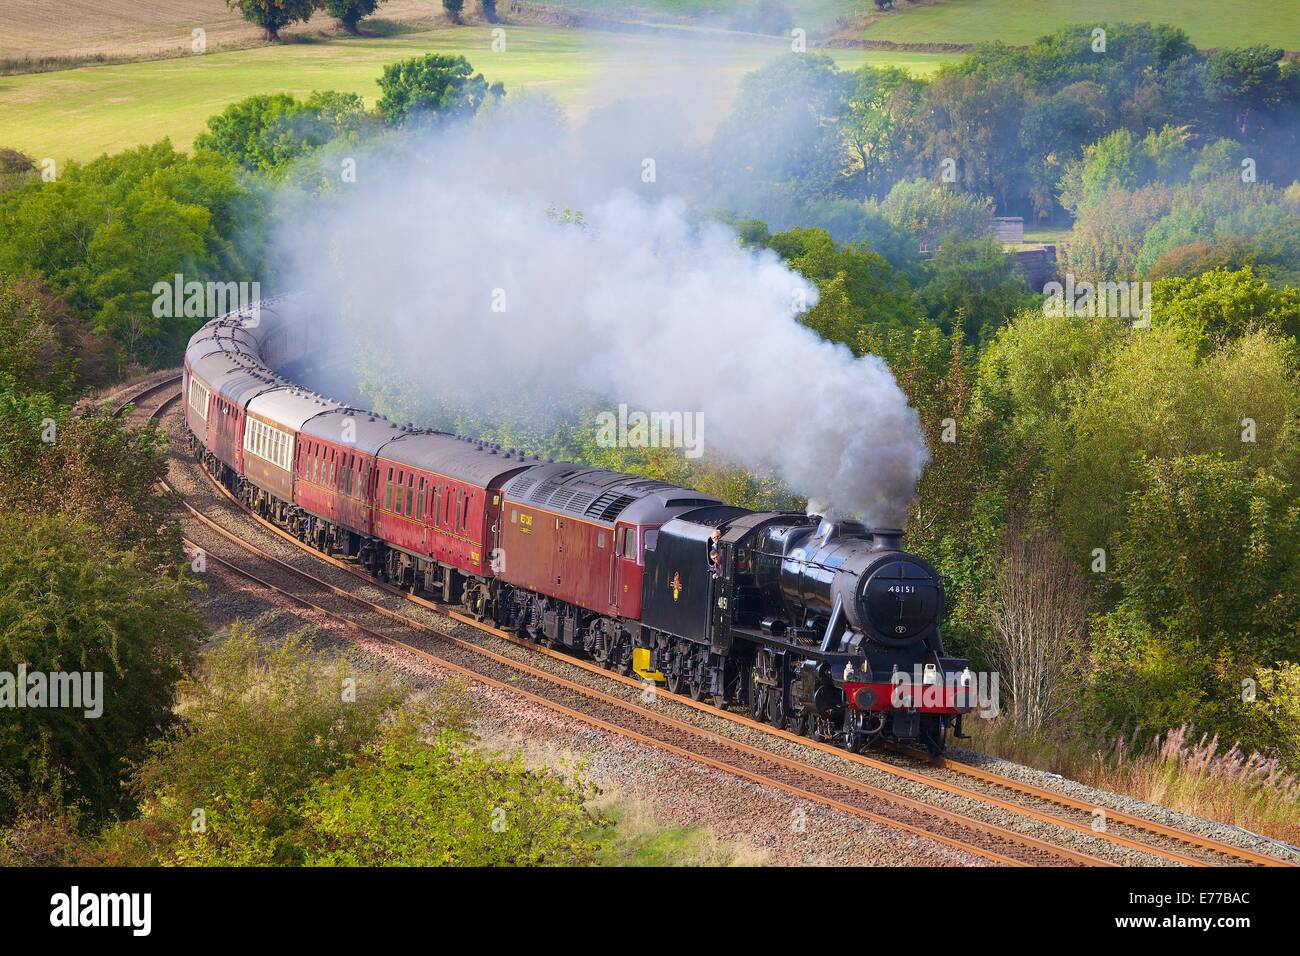 LMS Classe Stanier 8F 48151, près de train à vapeur de la ferme du Bois bas Baron Armathwaite Eden Valley, Cumbria, England, UK. Banque D'Images